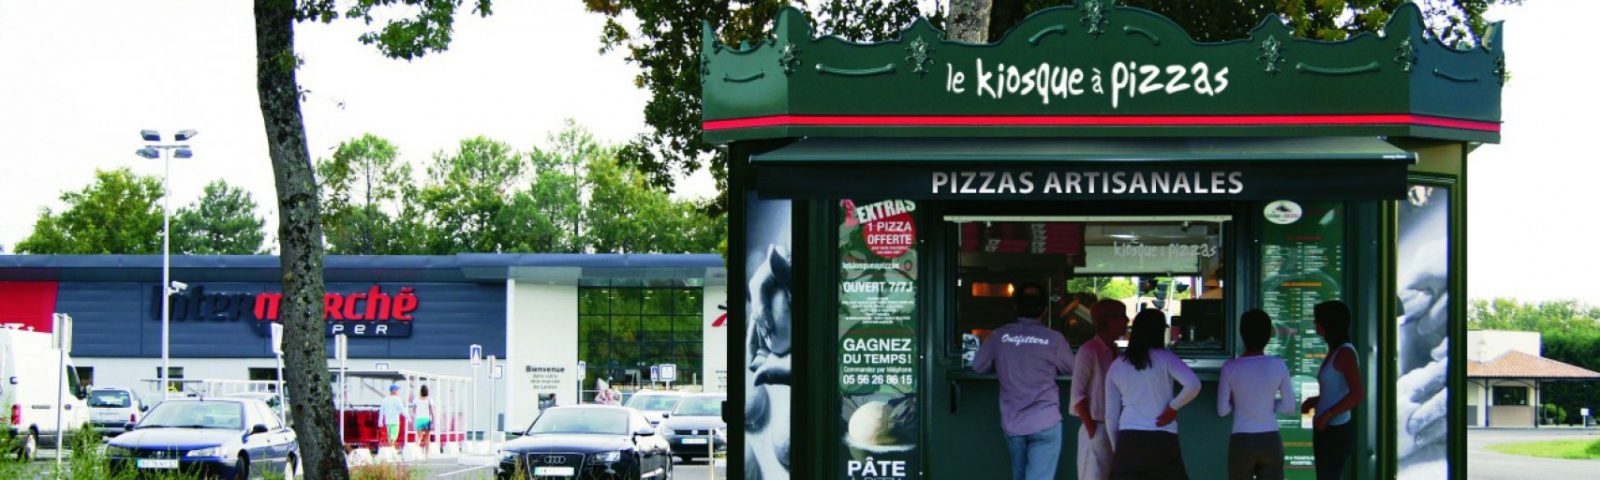 Le Kiosque à Pizzas cresce 12% em julho